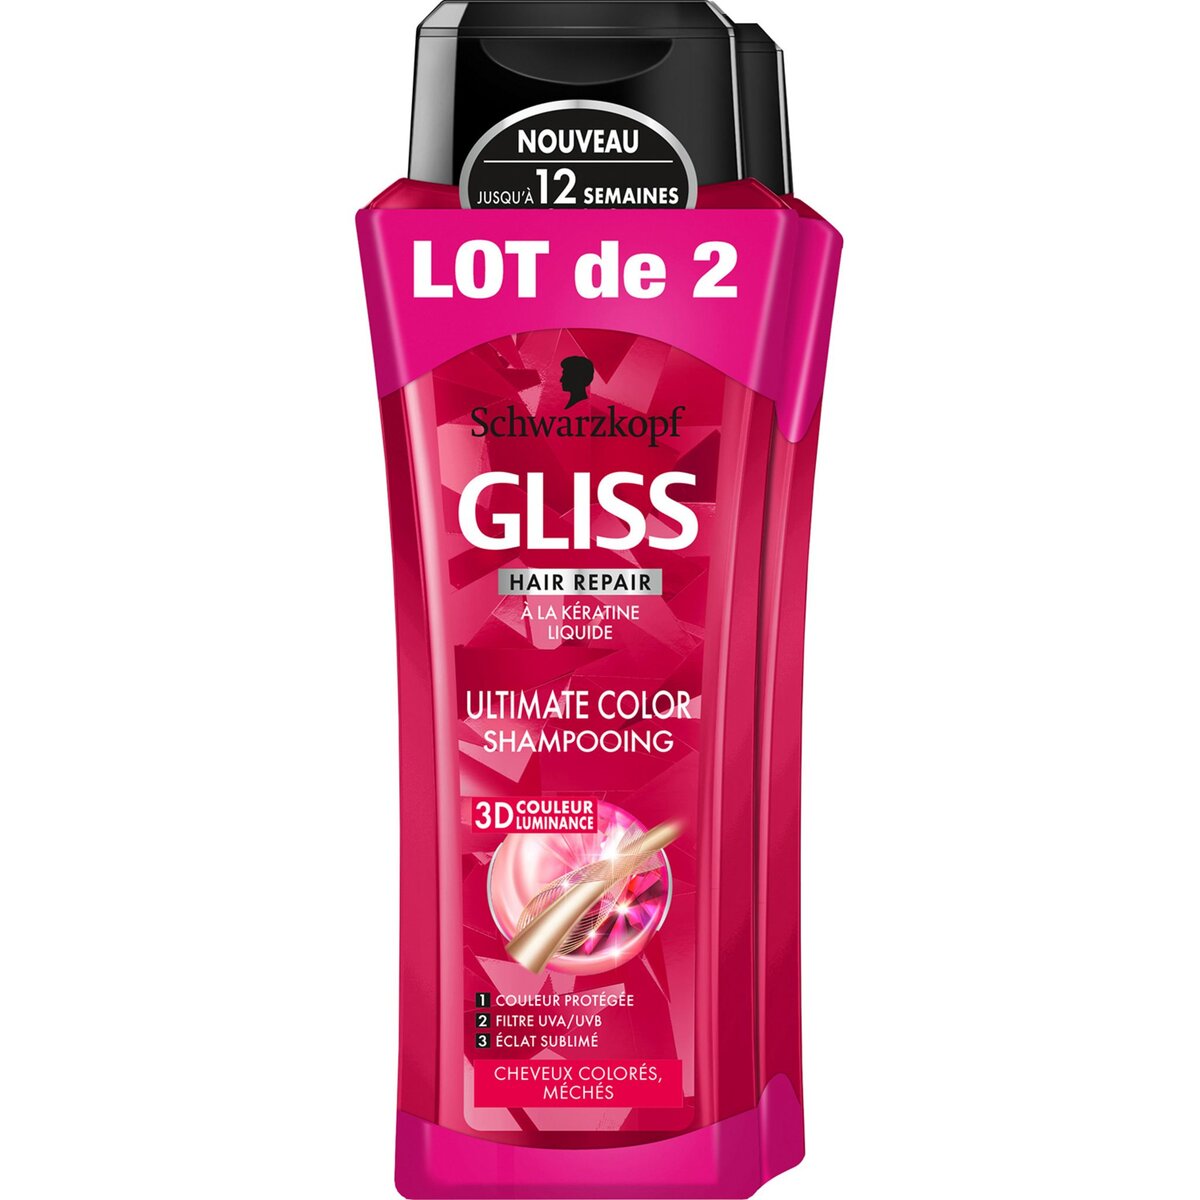 GLISS Shampooing à la kératine liquide cheveux colorés, méchés 2x250ml